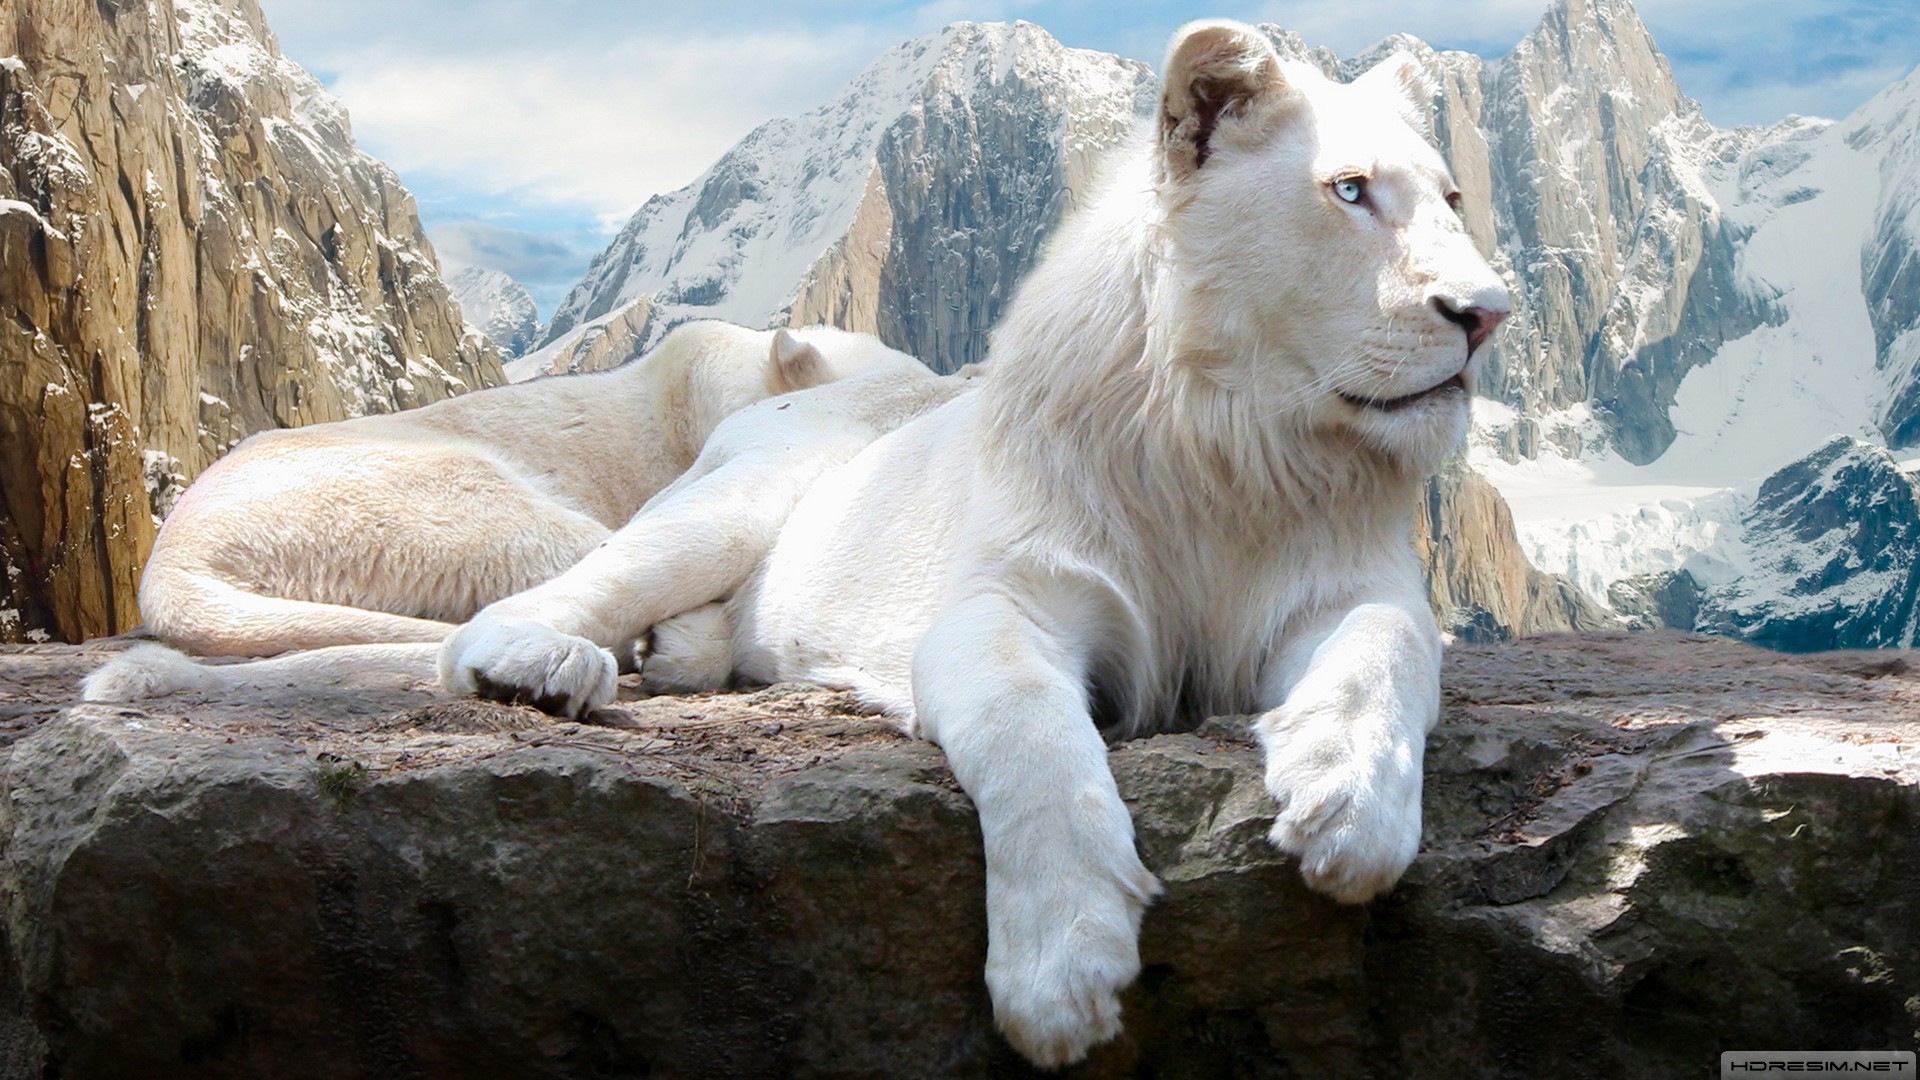 aslan,beyaz aslan,dağ,kar